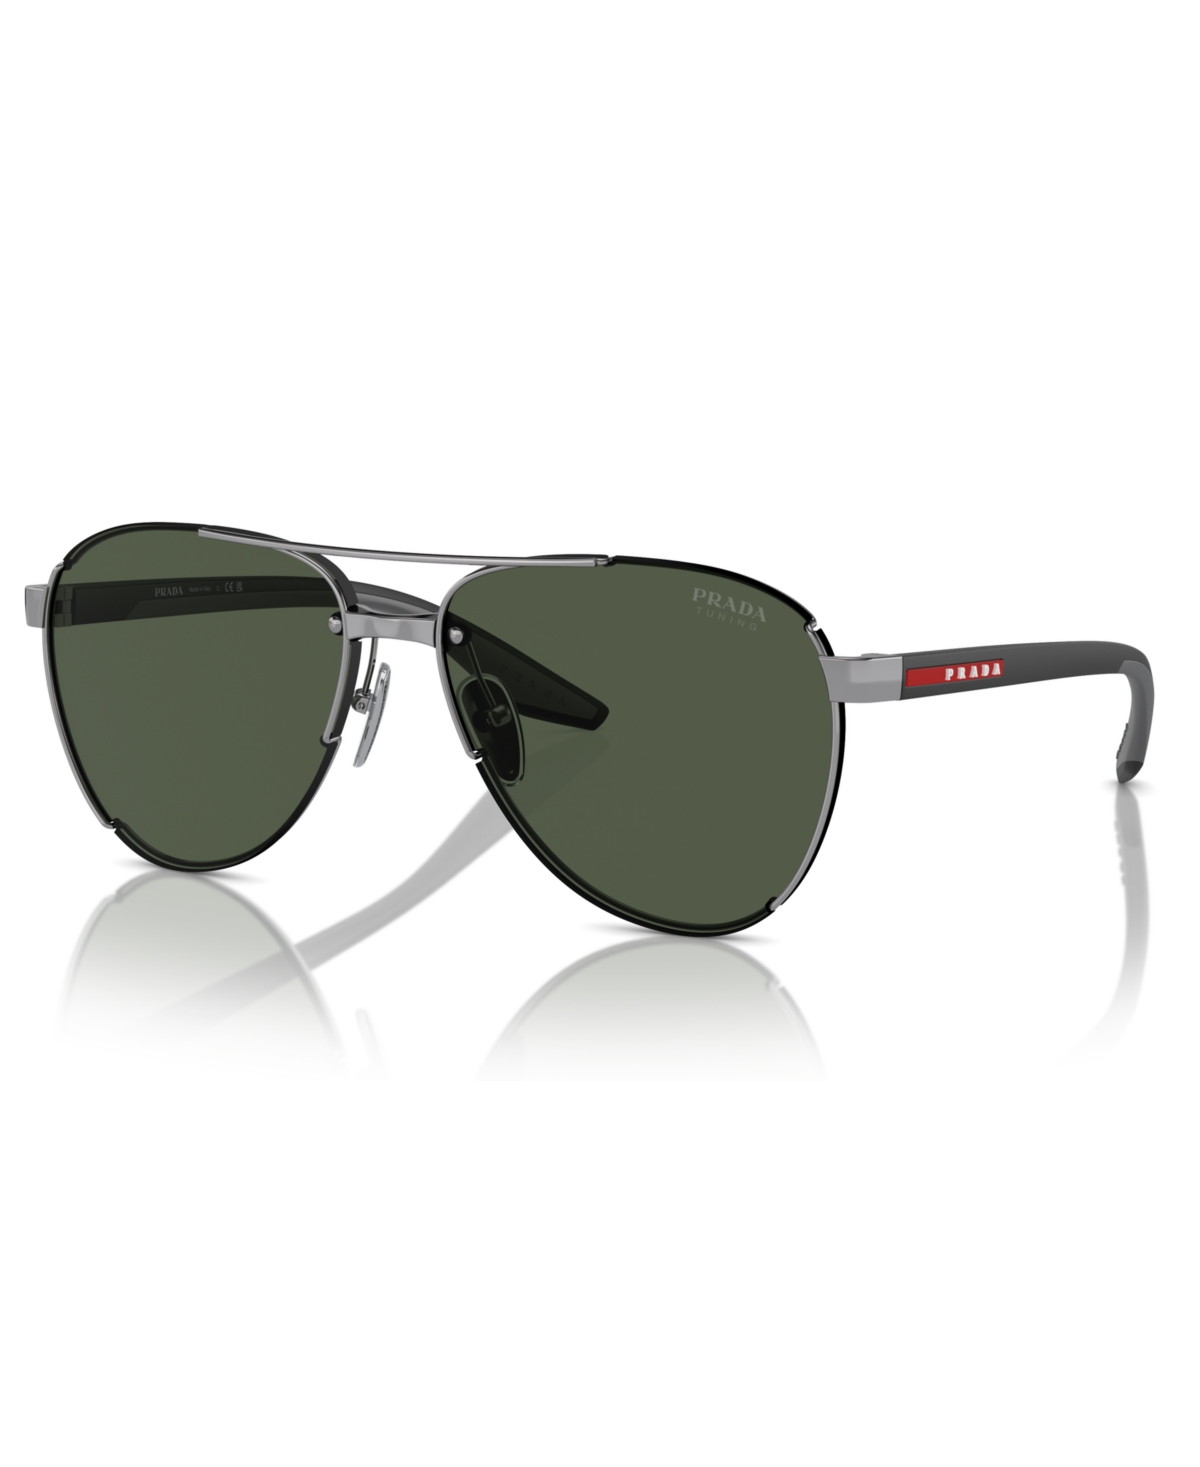 Men's Sunglasses, Ps 51YS - Gunmetal